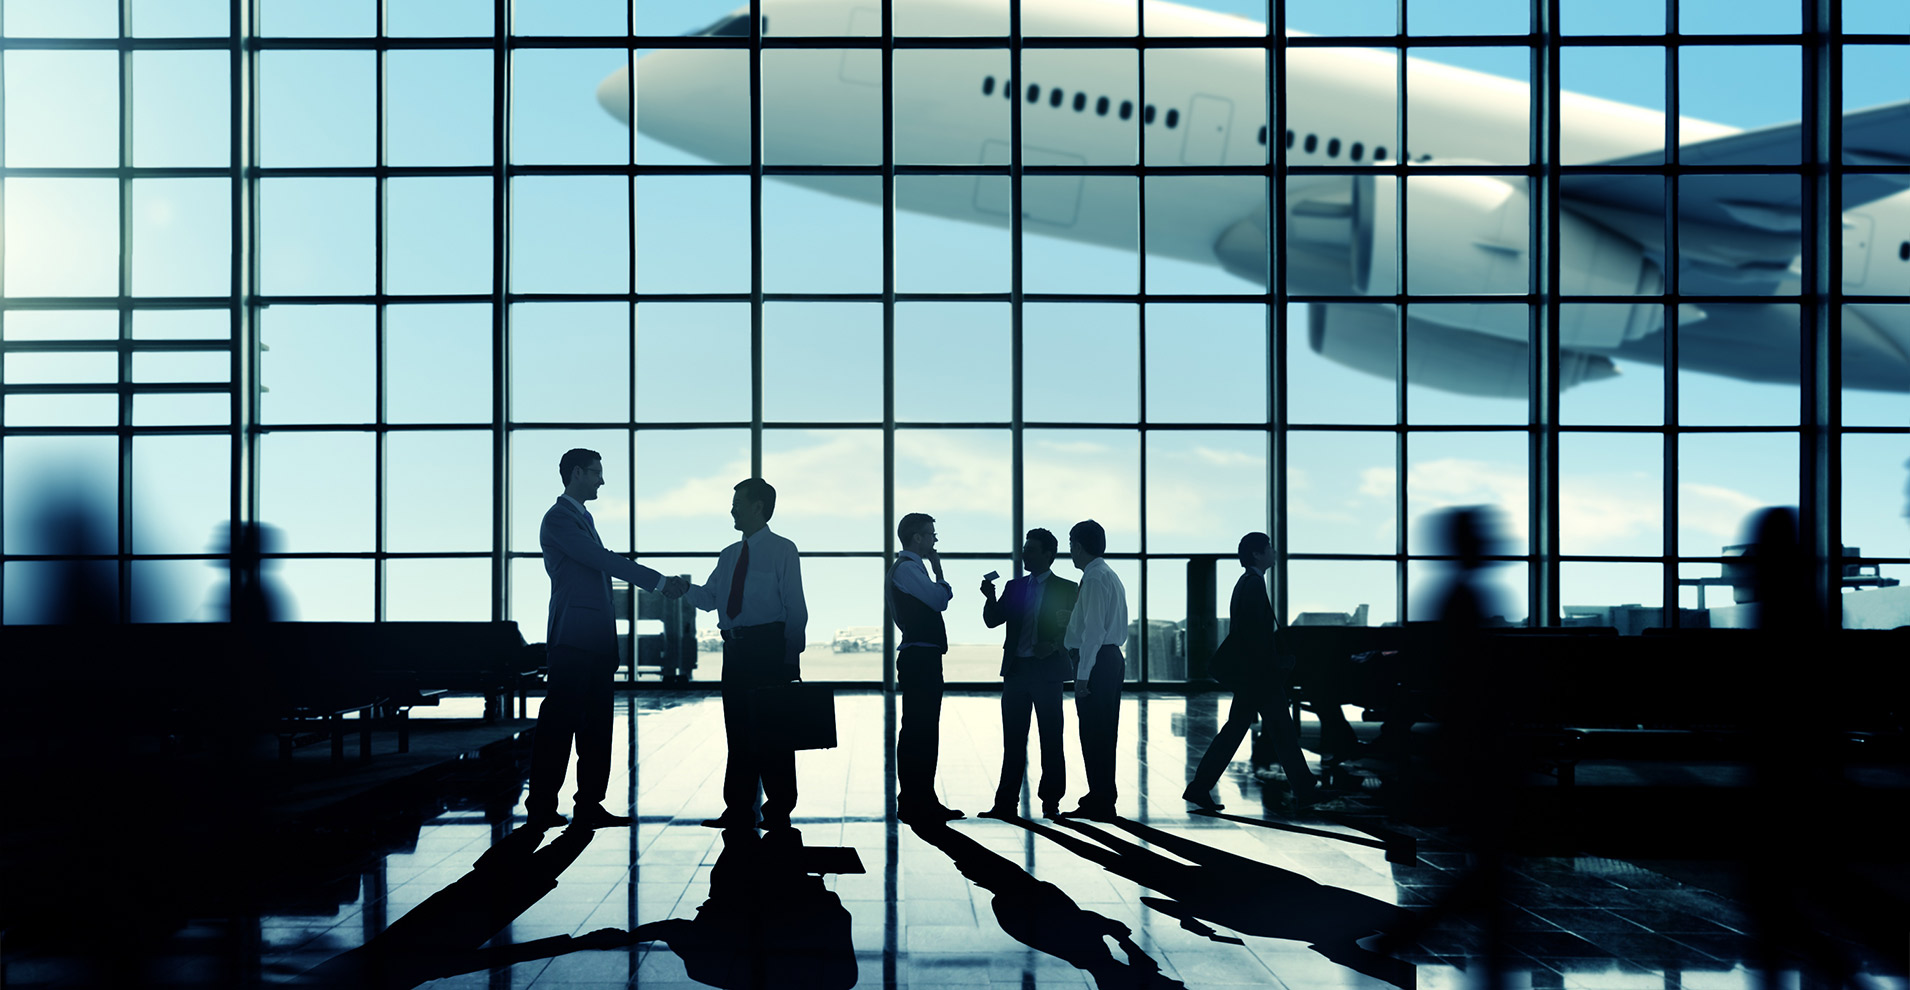 <div class='citacao'><span>Estamos presentes em 11 aeroportos brasileiros e outros países da América Latina.</span></div> 